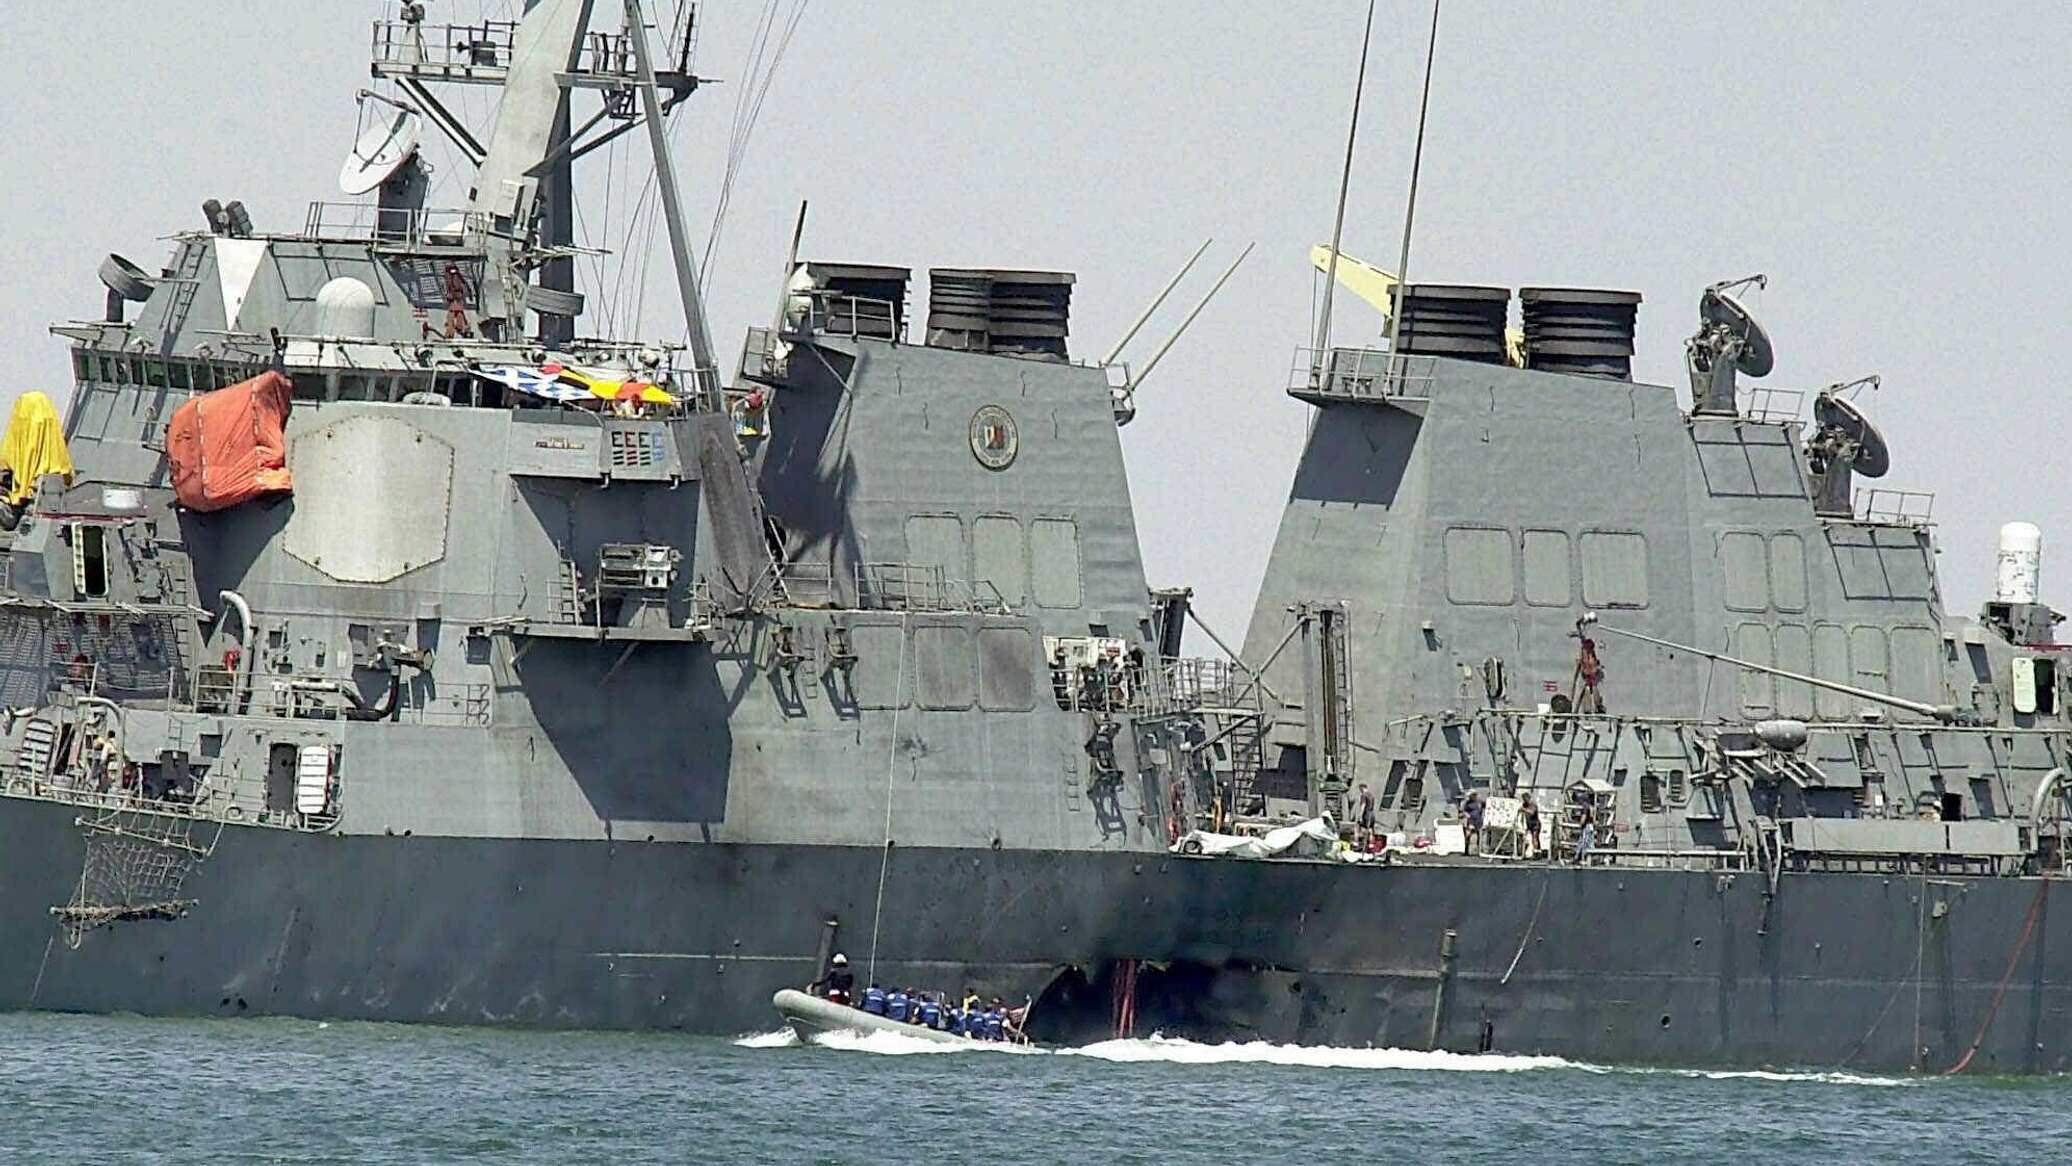 هيئة بحرية بريطانية تتلقى بلاغا عن وقوع حادث جنوبي البحر الأحمر